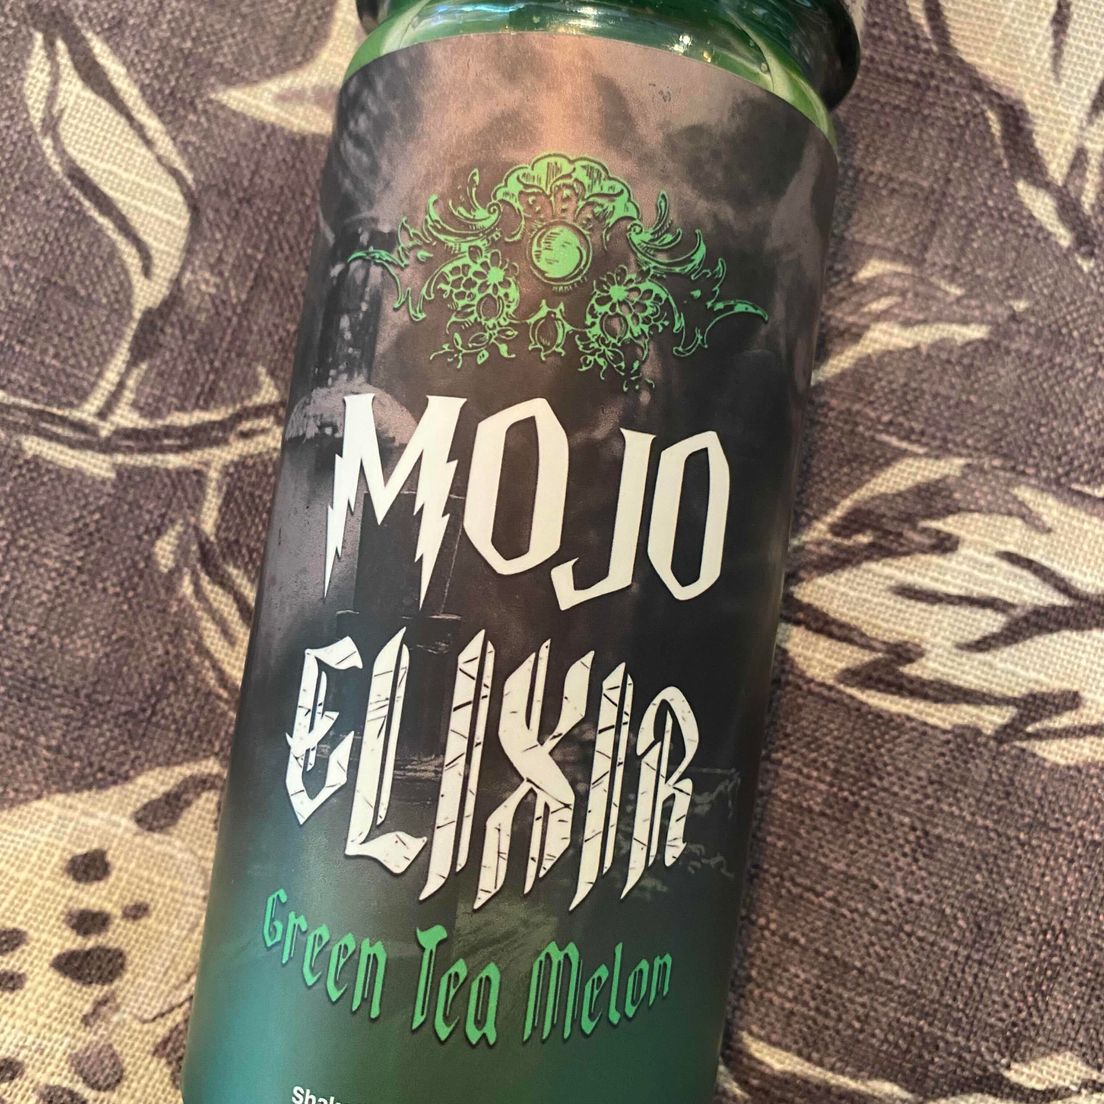 200mg Green Tea Melon Elixer Drink | Mojo Medibles